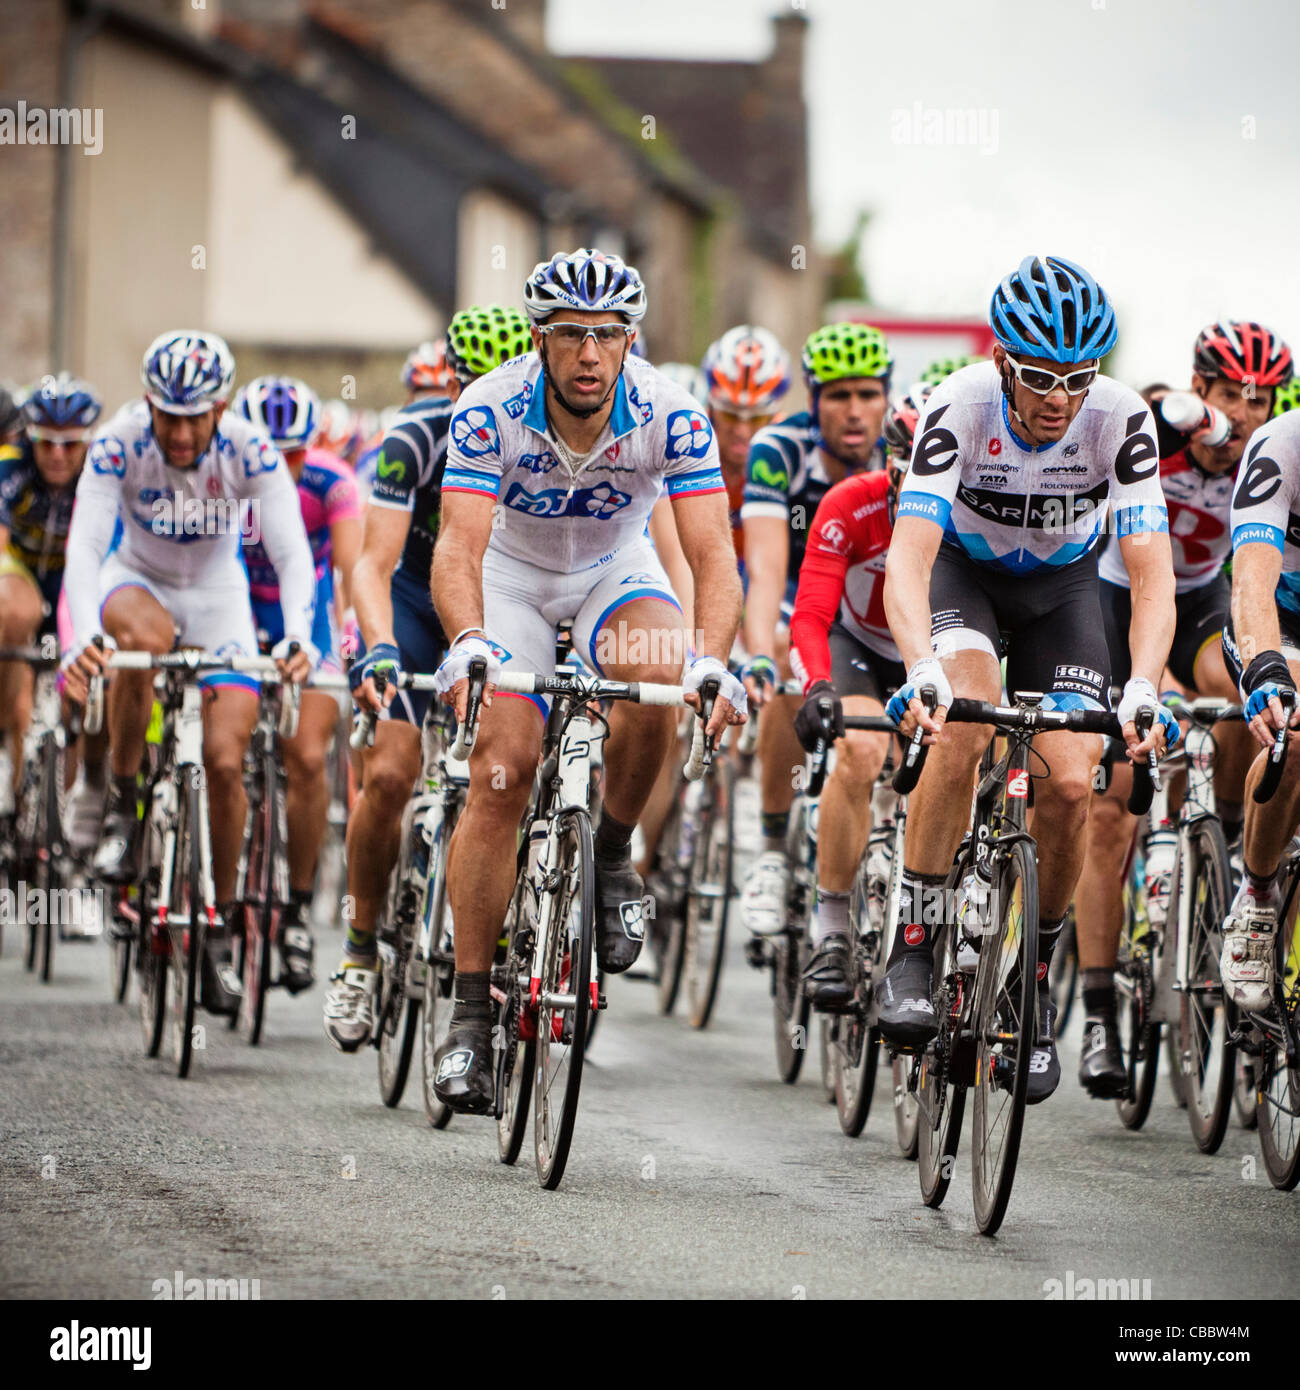 Tour de France - Radfahrer im Peloton Fahrrad durch ein französisches Dorf bei der Tour de France in der Bretagne Stockfoto